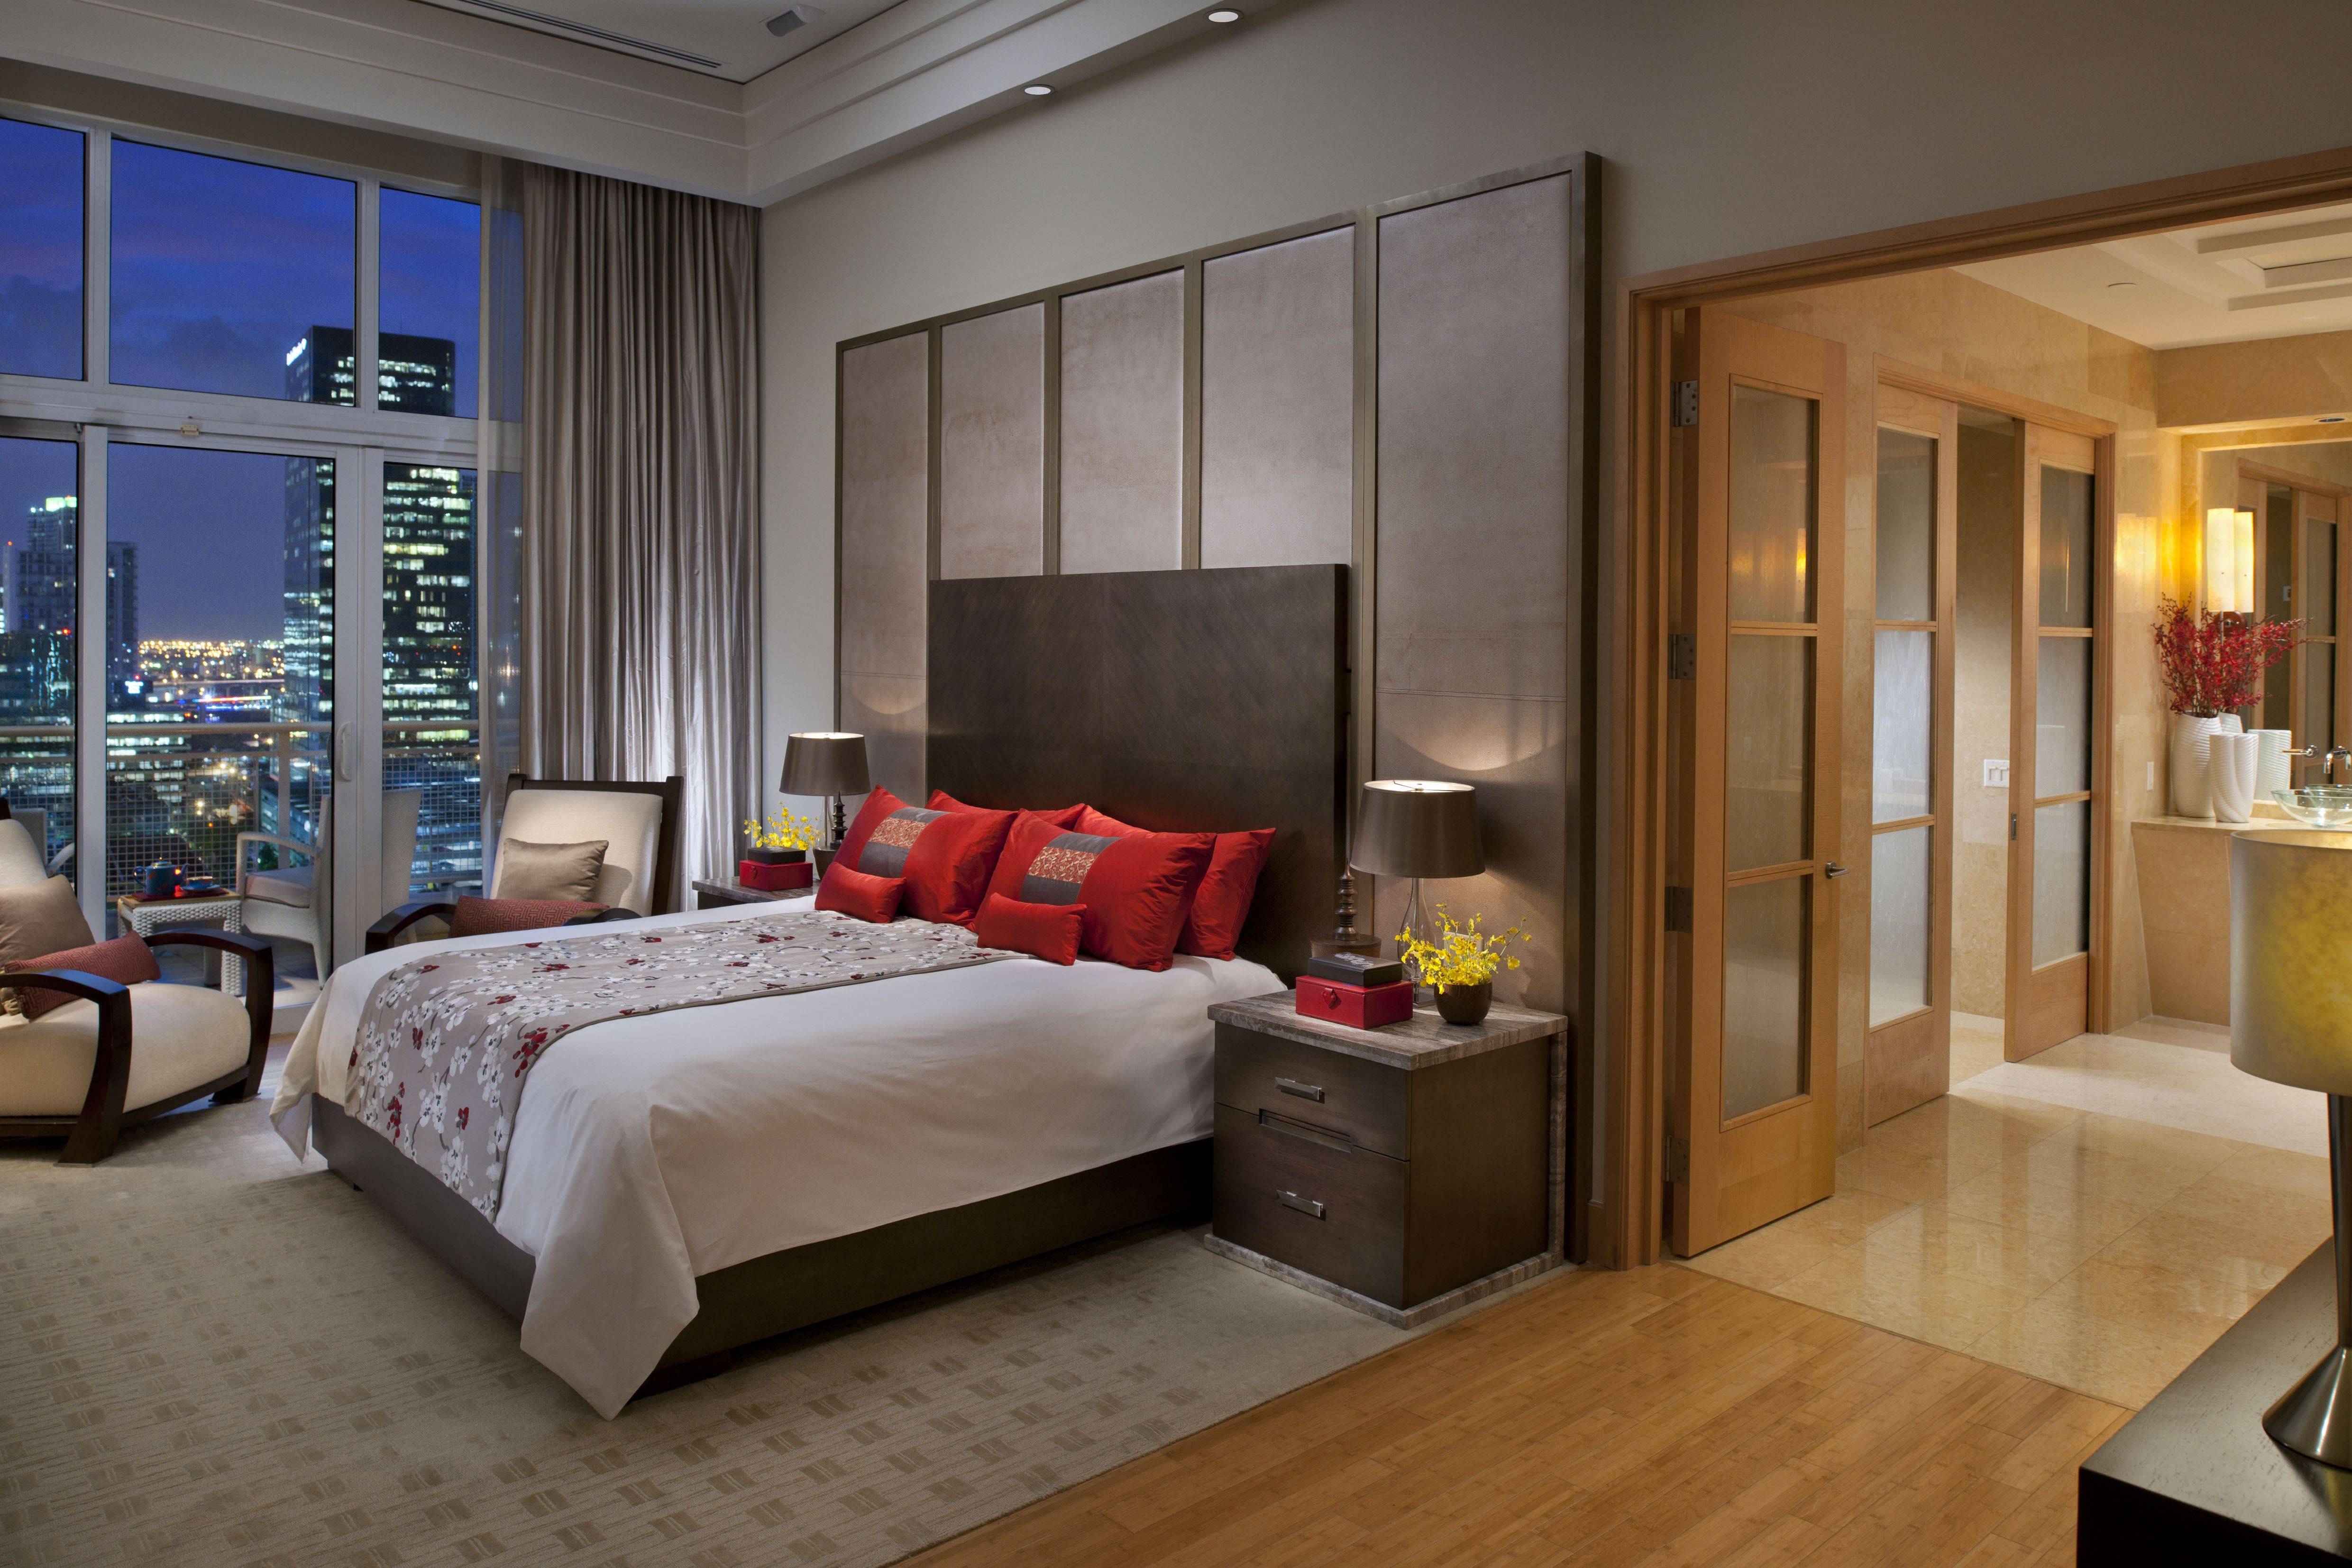 Понравилась обстановка. Отель Mandarin oriental Miami. Красивая квартира спальня. Красивая комната. Спа комнаты.